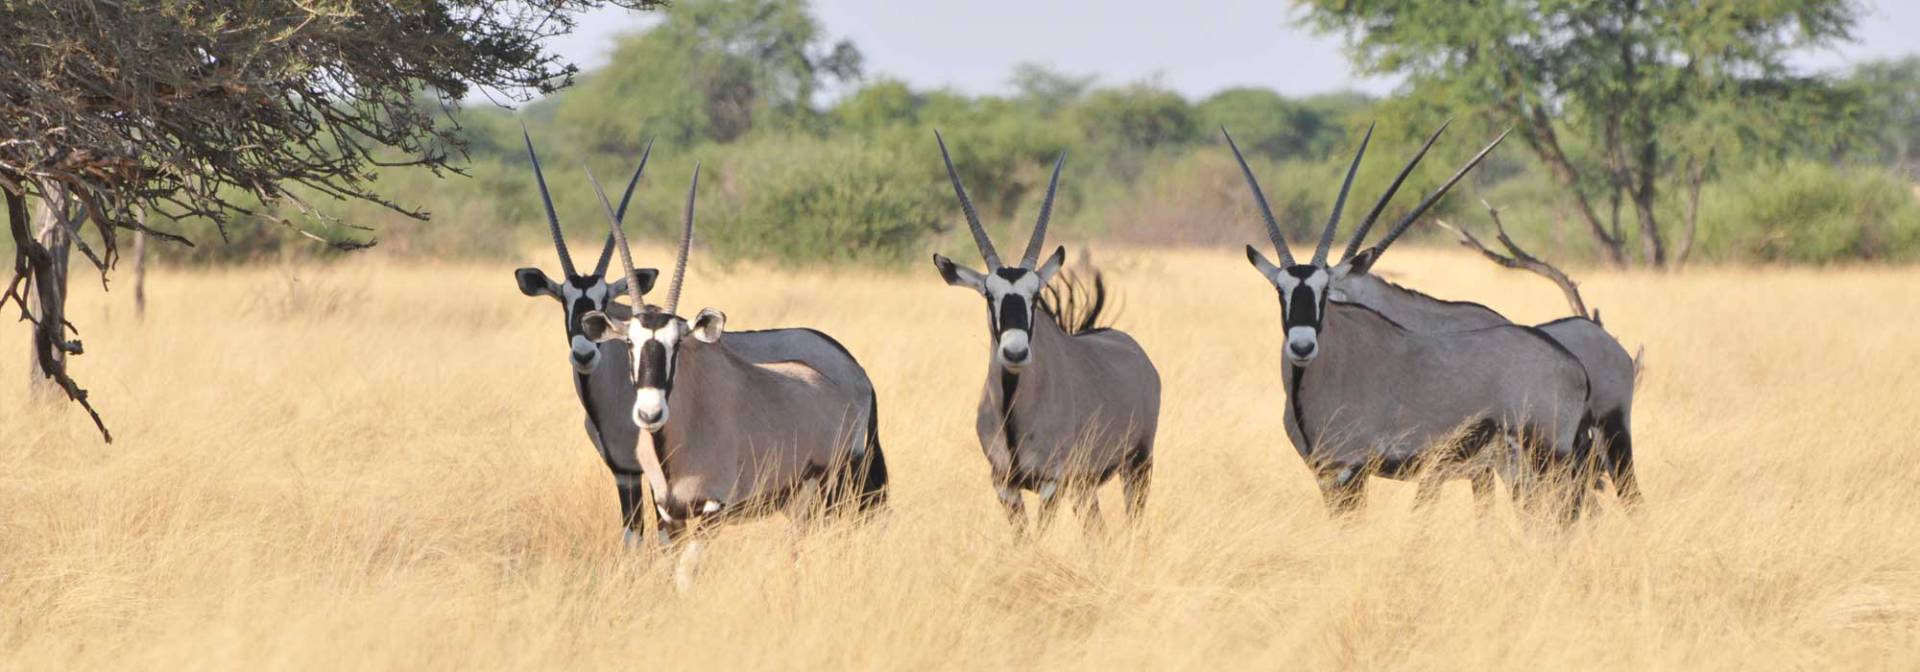 Oryx antelope in the Kalahari